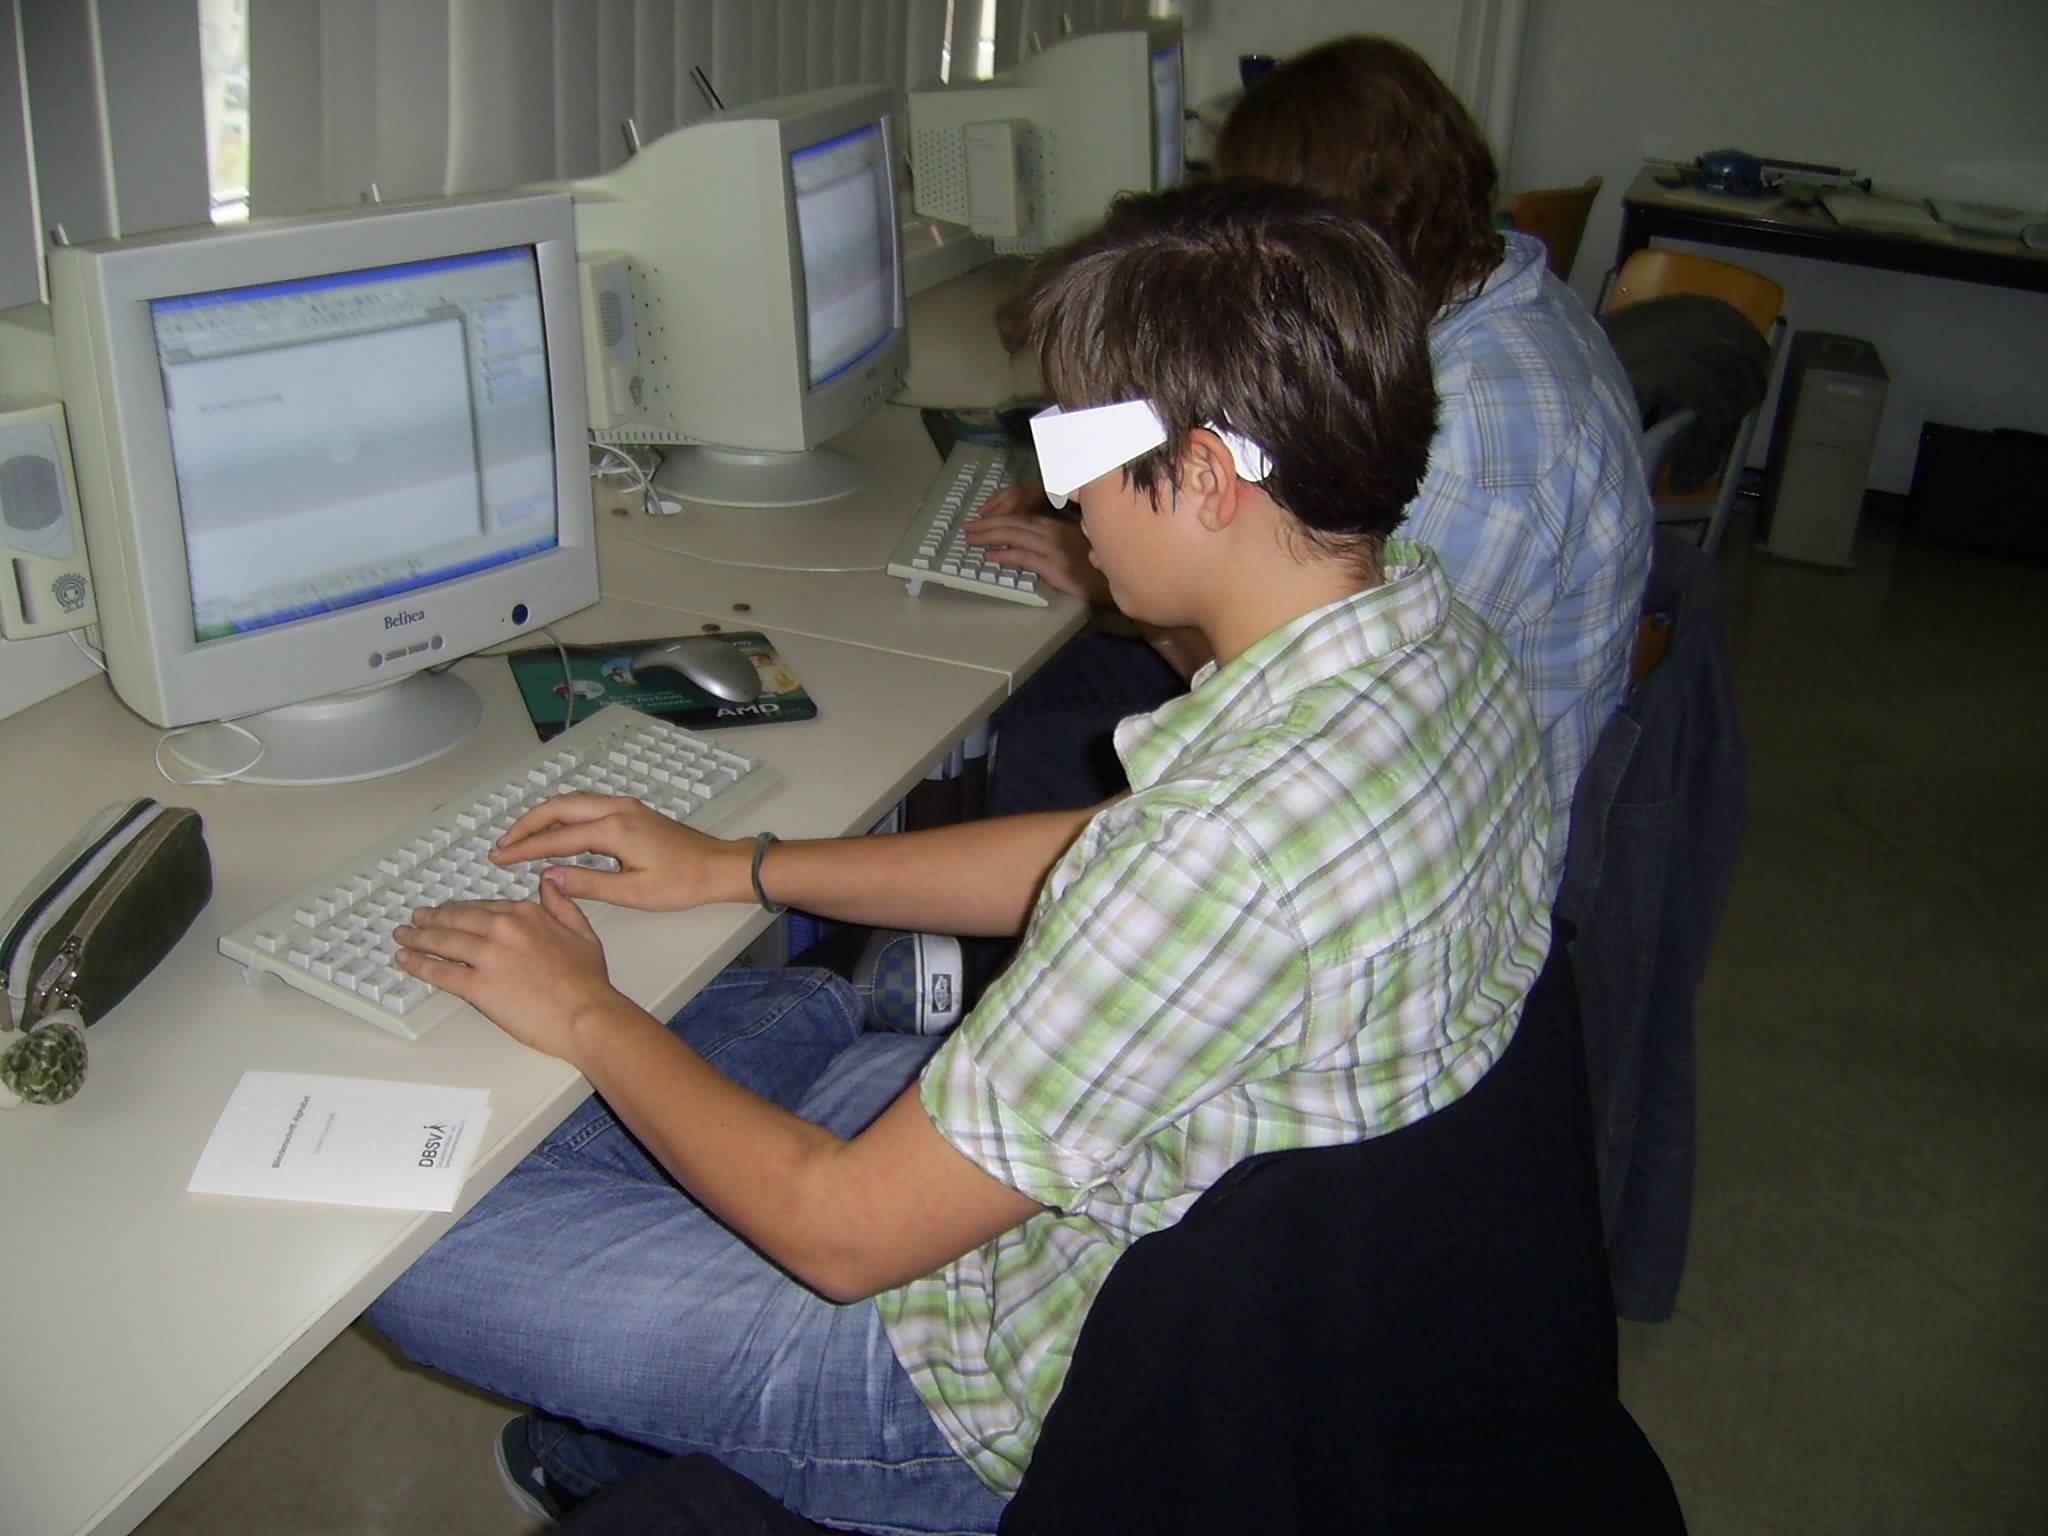 Schreiben mit Brille am Schülerarbeitsplatz